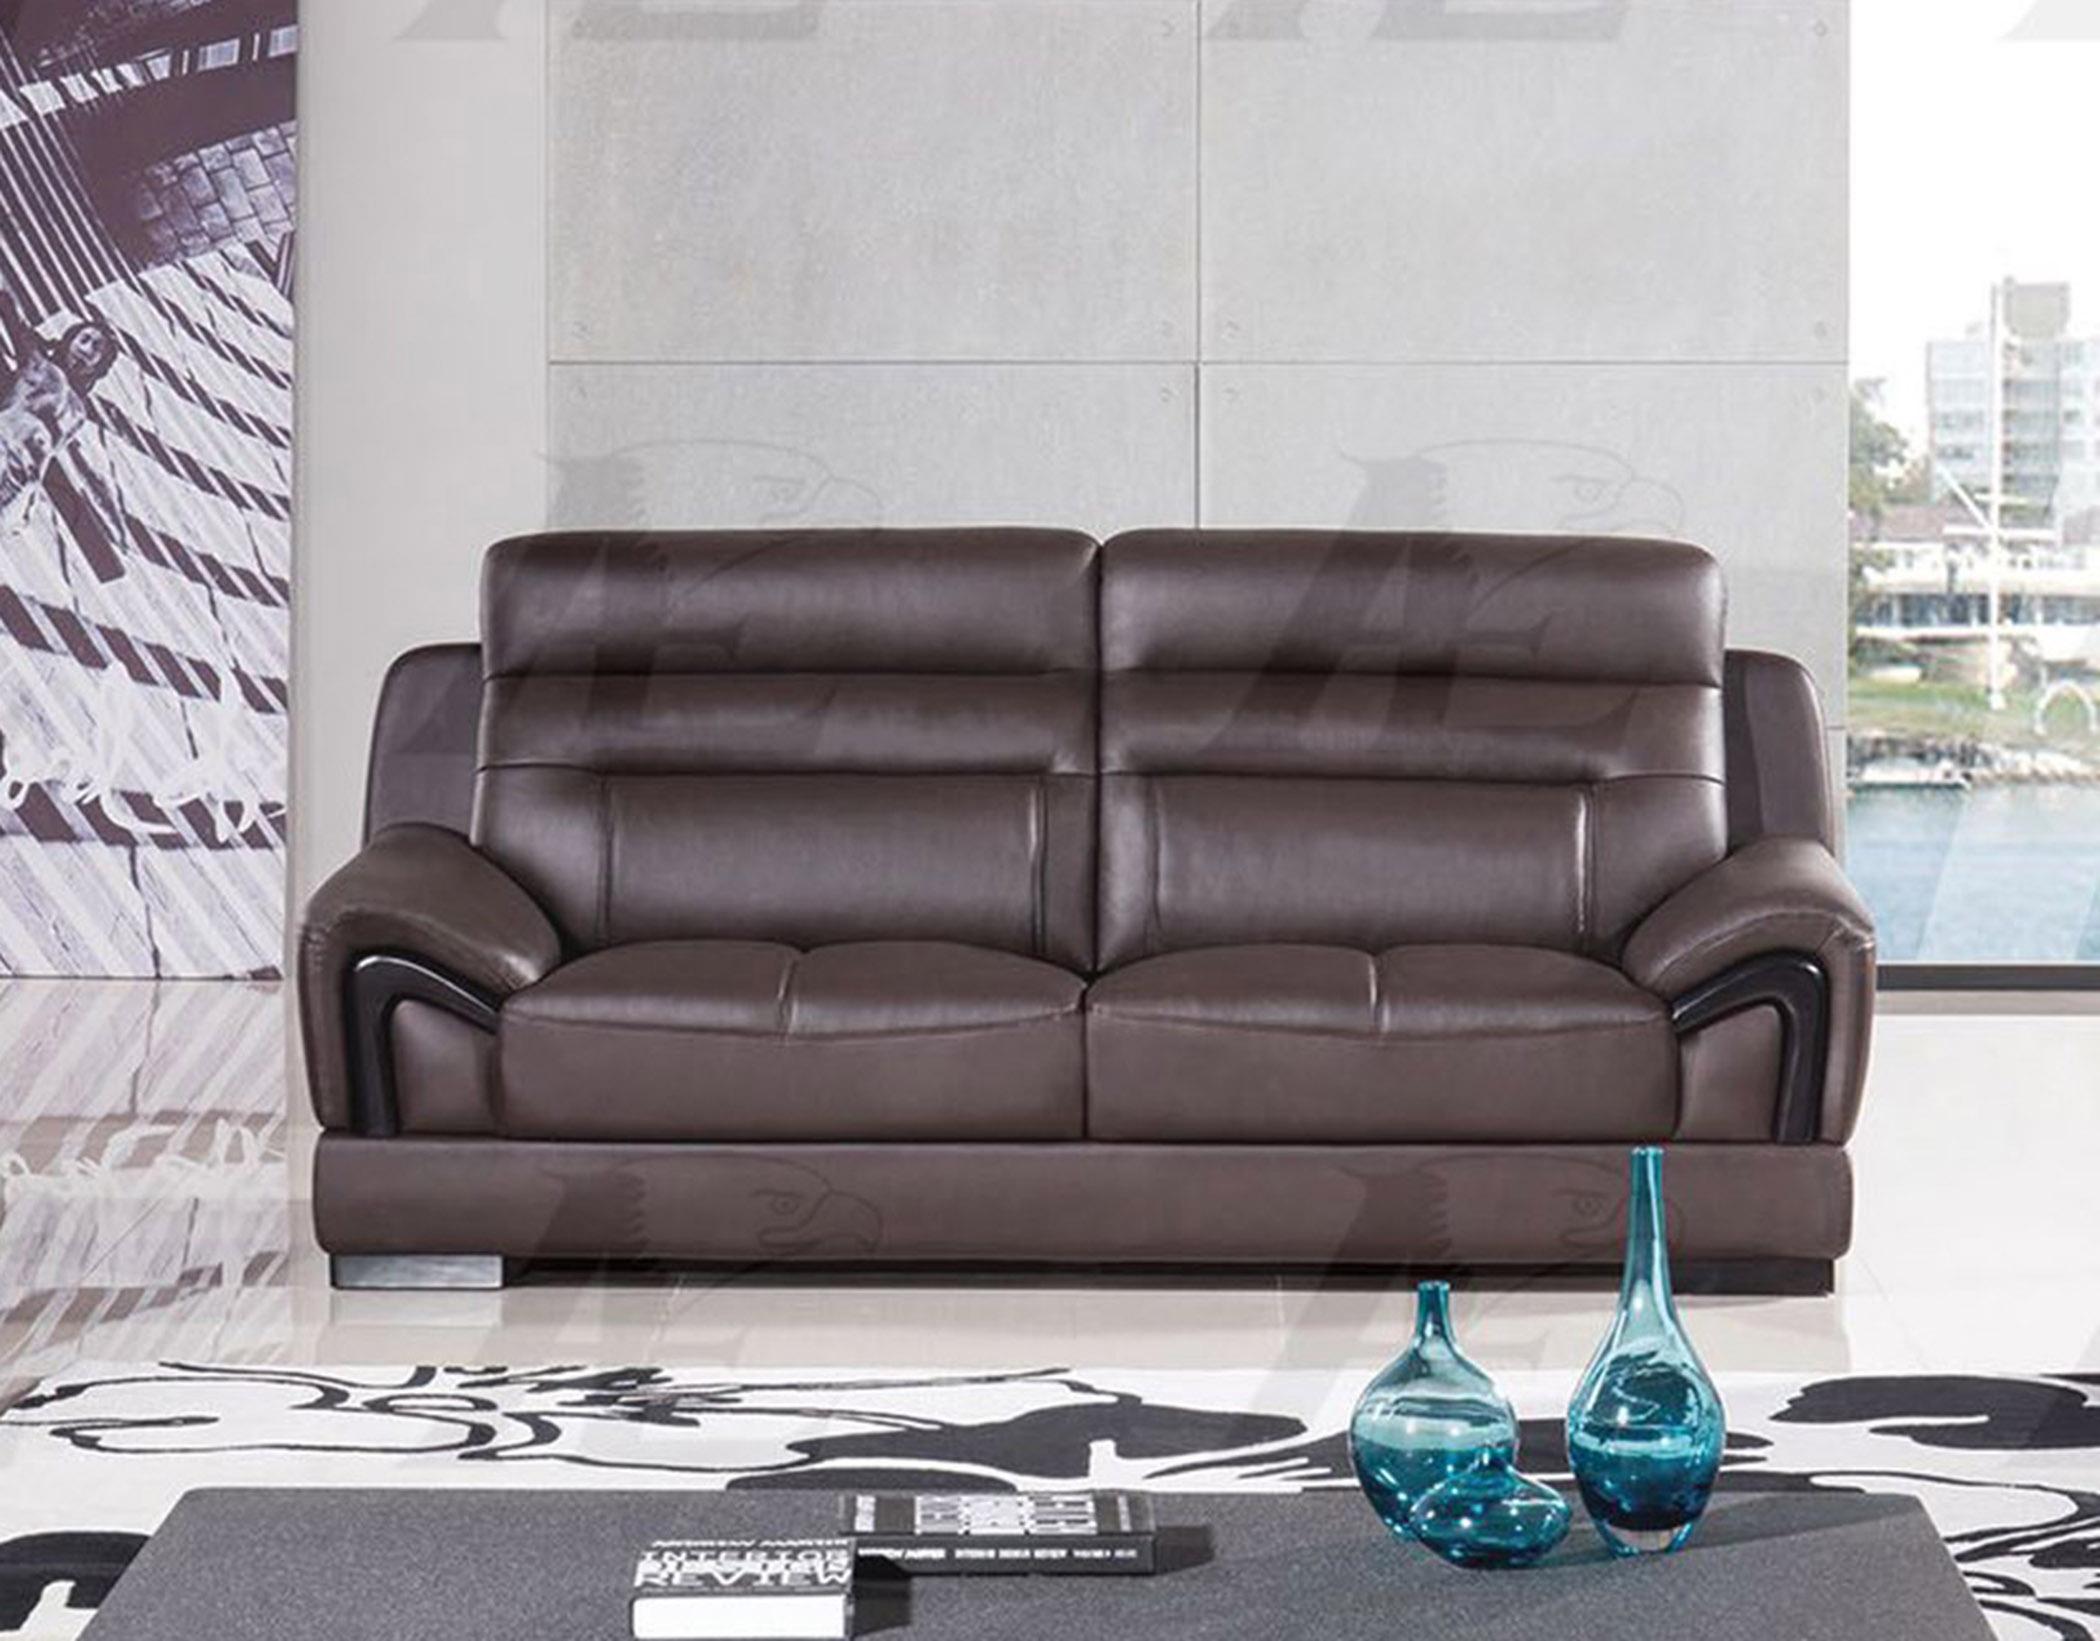 

    
American Eagle Furniture EK-B120-DC Modern Dark Chocolate Genuine Leather Sofa
